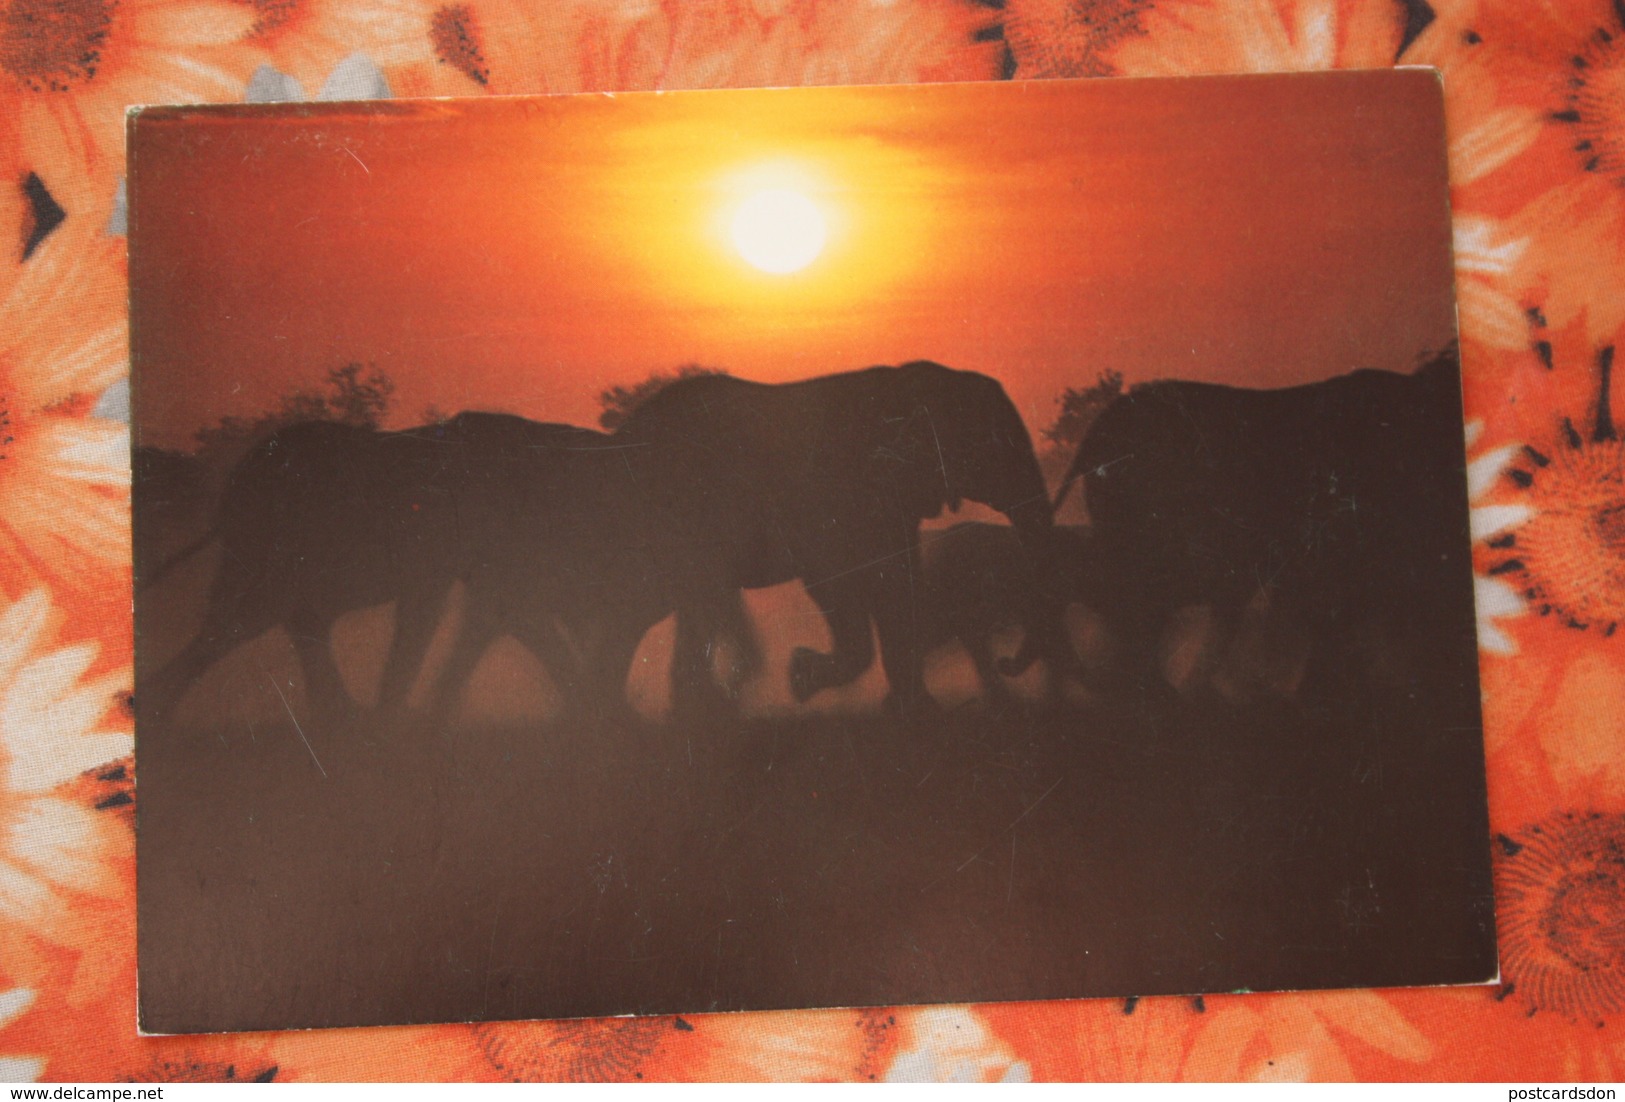 South West Africa - SWA (Namibia) - Walvis Bay - Elephant - Namibia